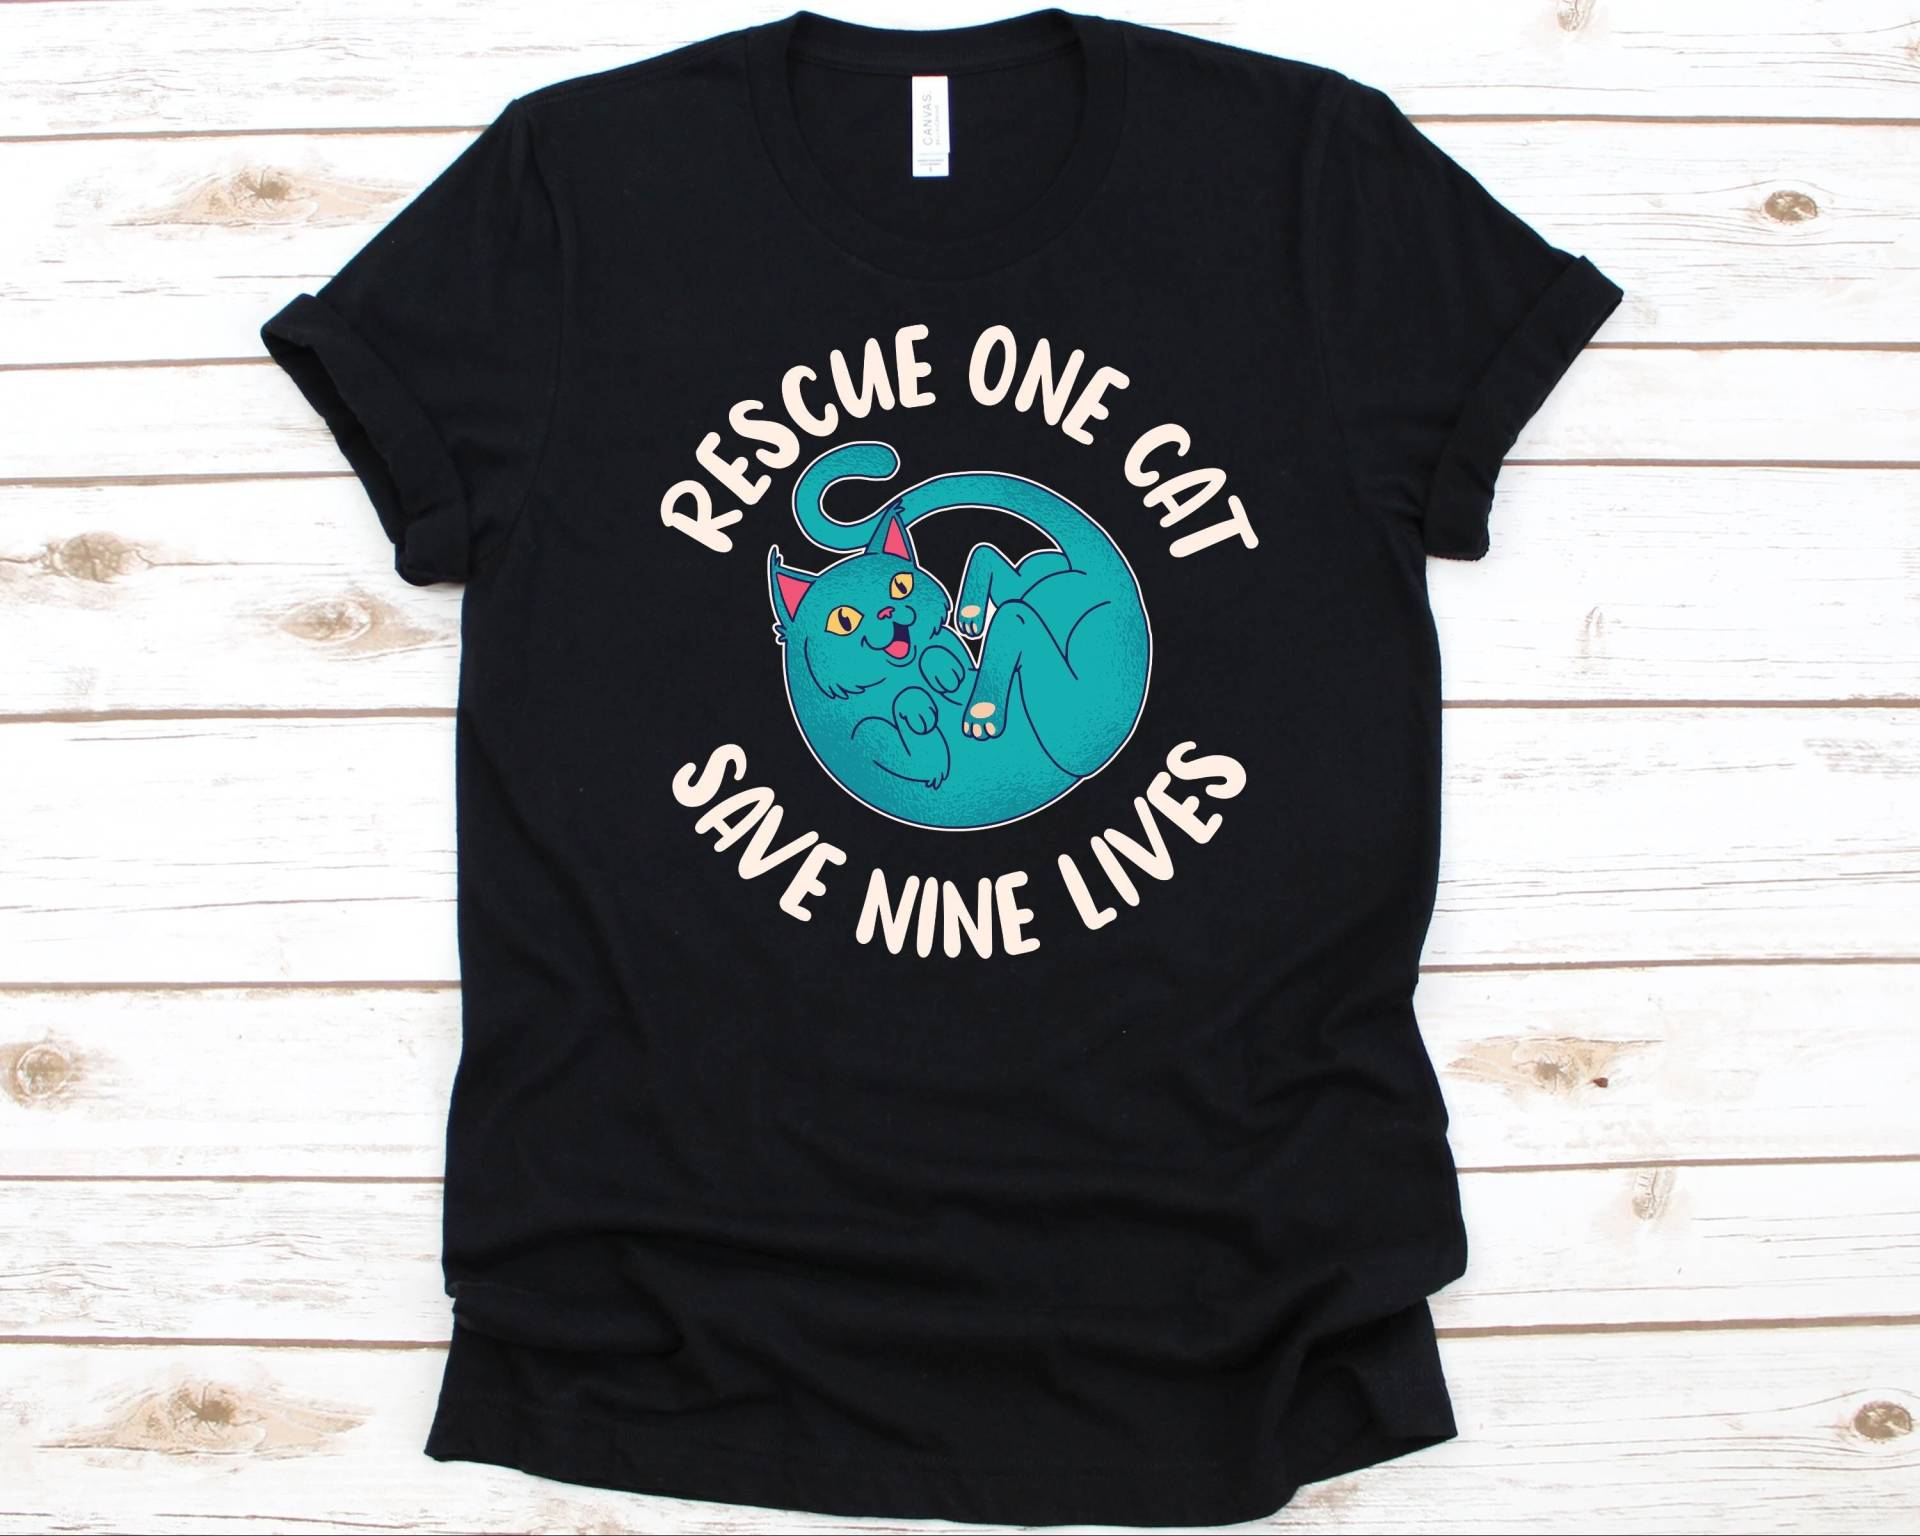 Rescue One Cat Shirt, Tierretter Geschenk Für Männer Und Frauen, Tierquälerei Bewusstsein, Tierschutz Design, Tierschutz, Katzenliebhaber von AbbysDesignFactory